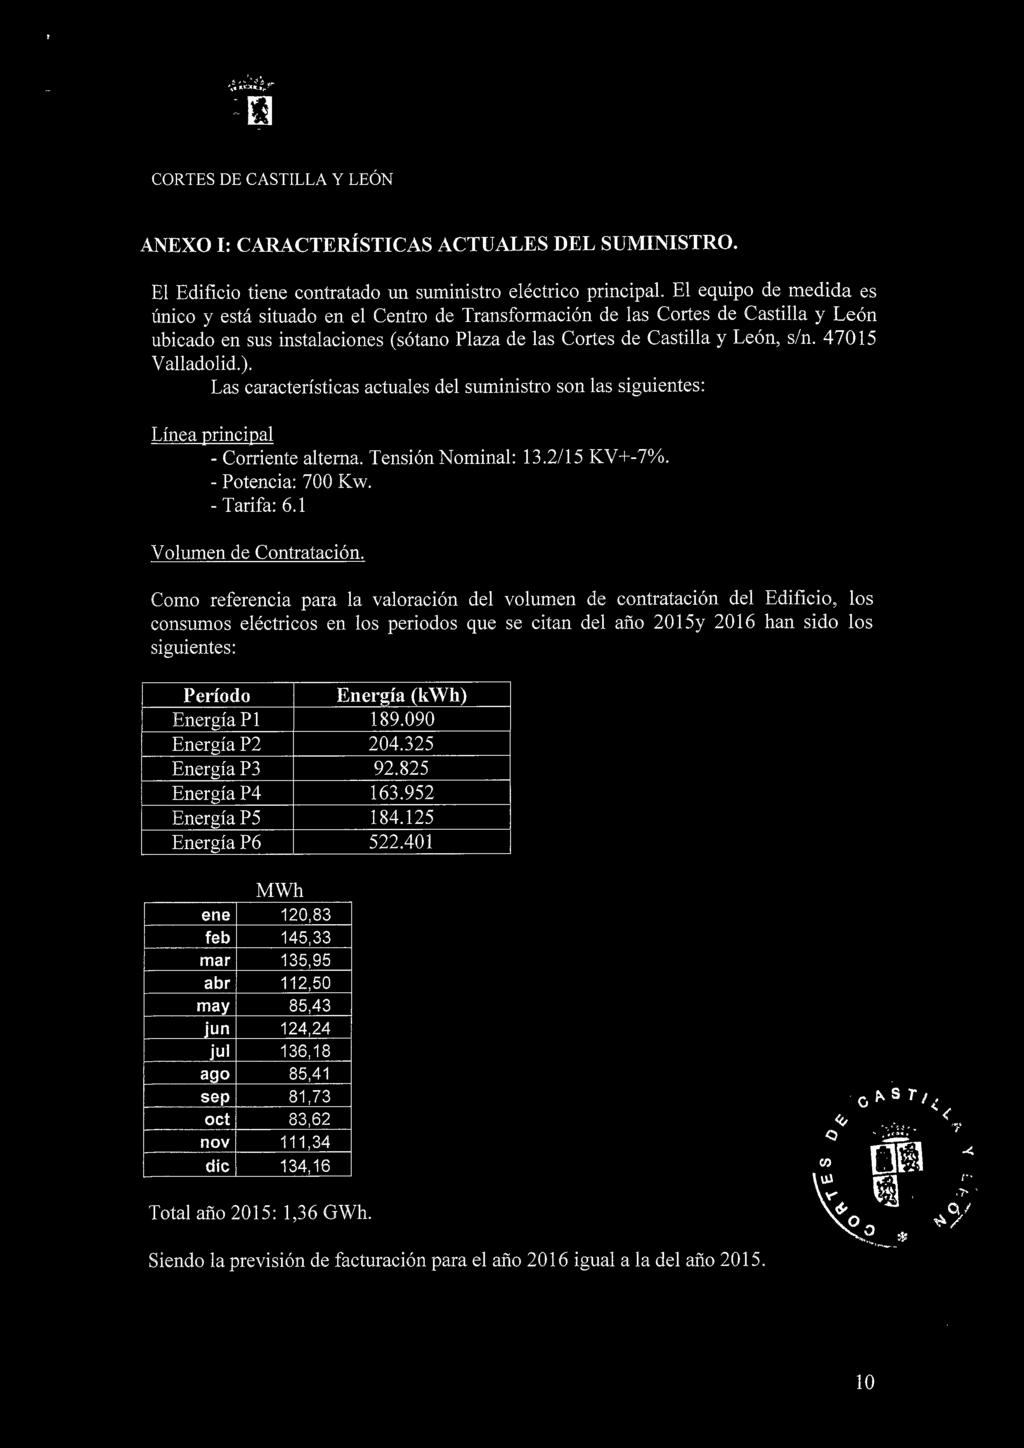 47015 Valladolid.). Las características actuales del suministro son las siguientes: Línea principal - Corriente alterna. Tensión Nominal: 13.2/15 KV+-7%. - Potencia: 700 Kw. - Tarifa: 6.